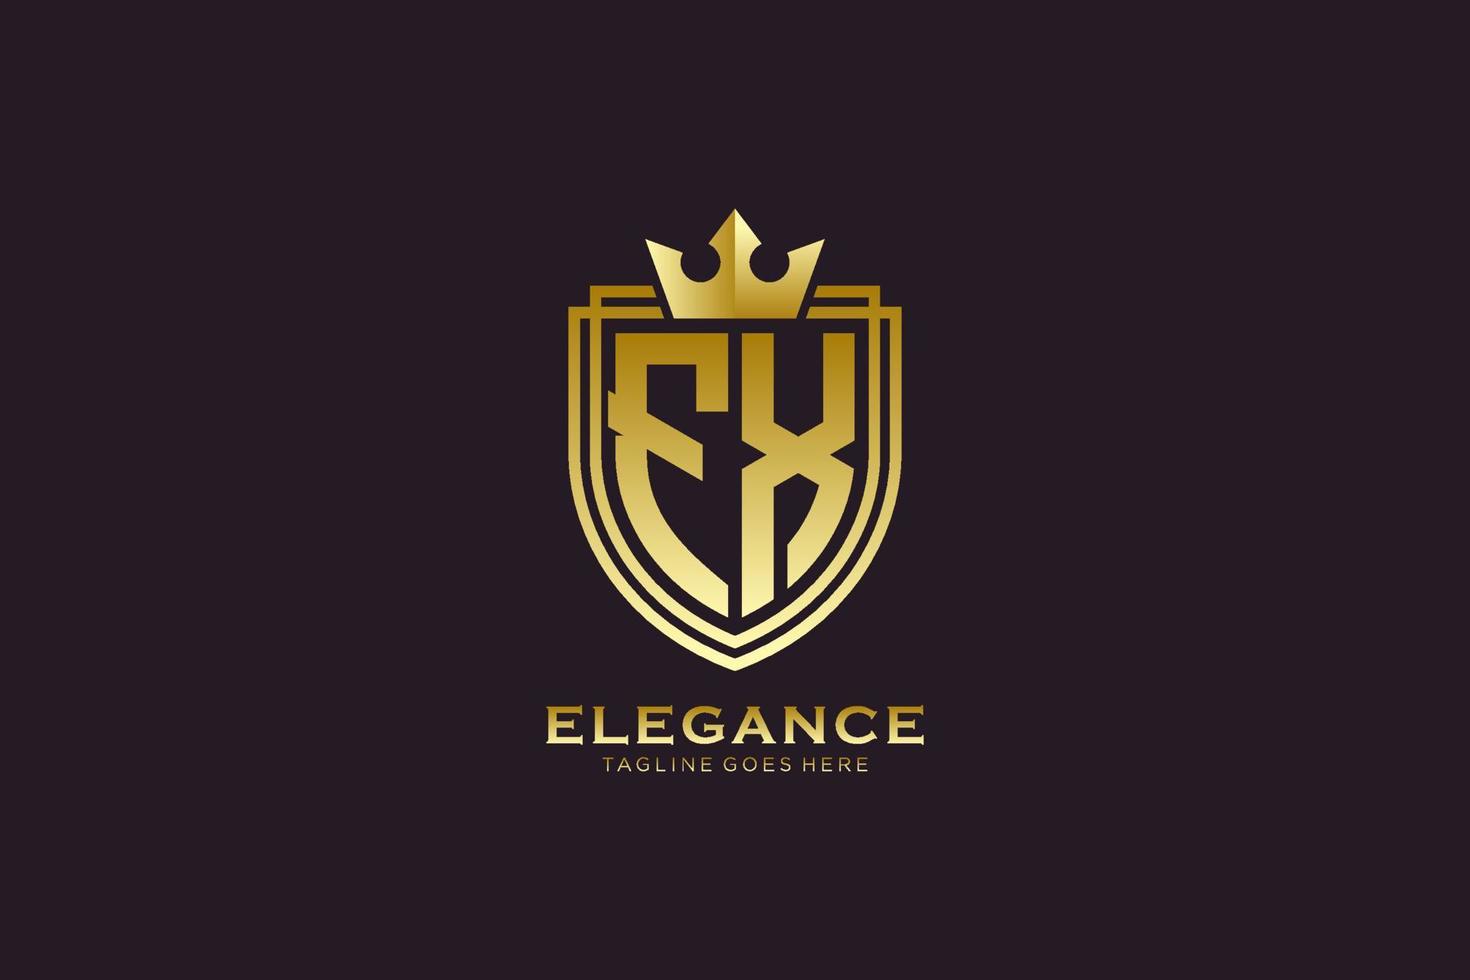 logotipo de monograma de lujo elegante inicial fx o plantilla de placa con pergaminos y corona real - perfecto para proyectos de marca de lujo vector